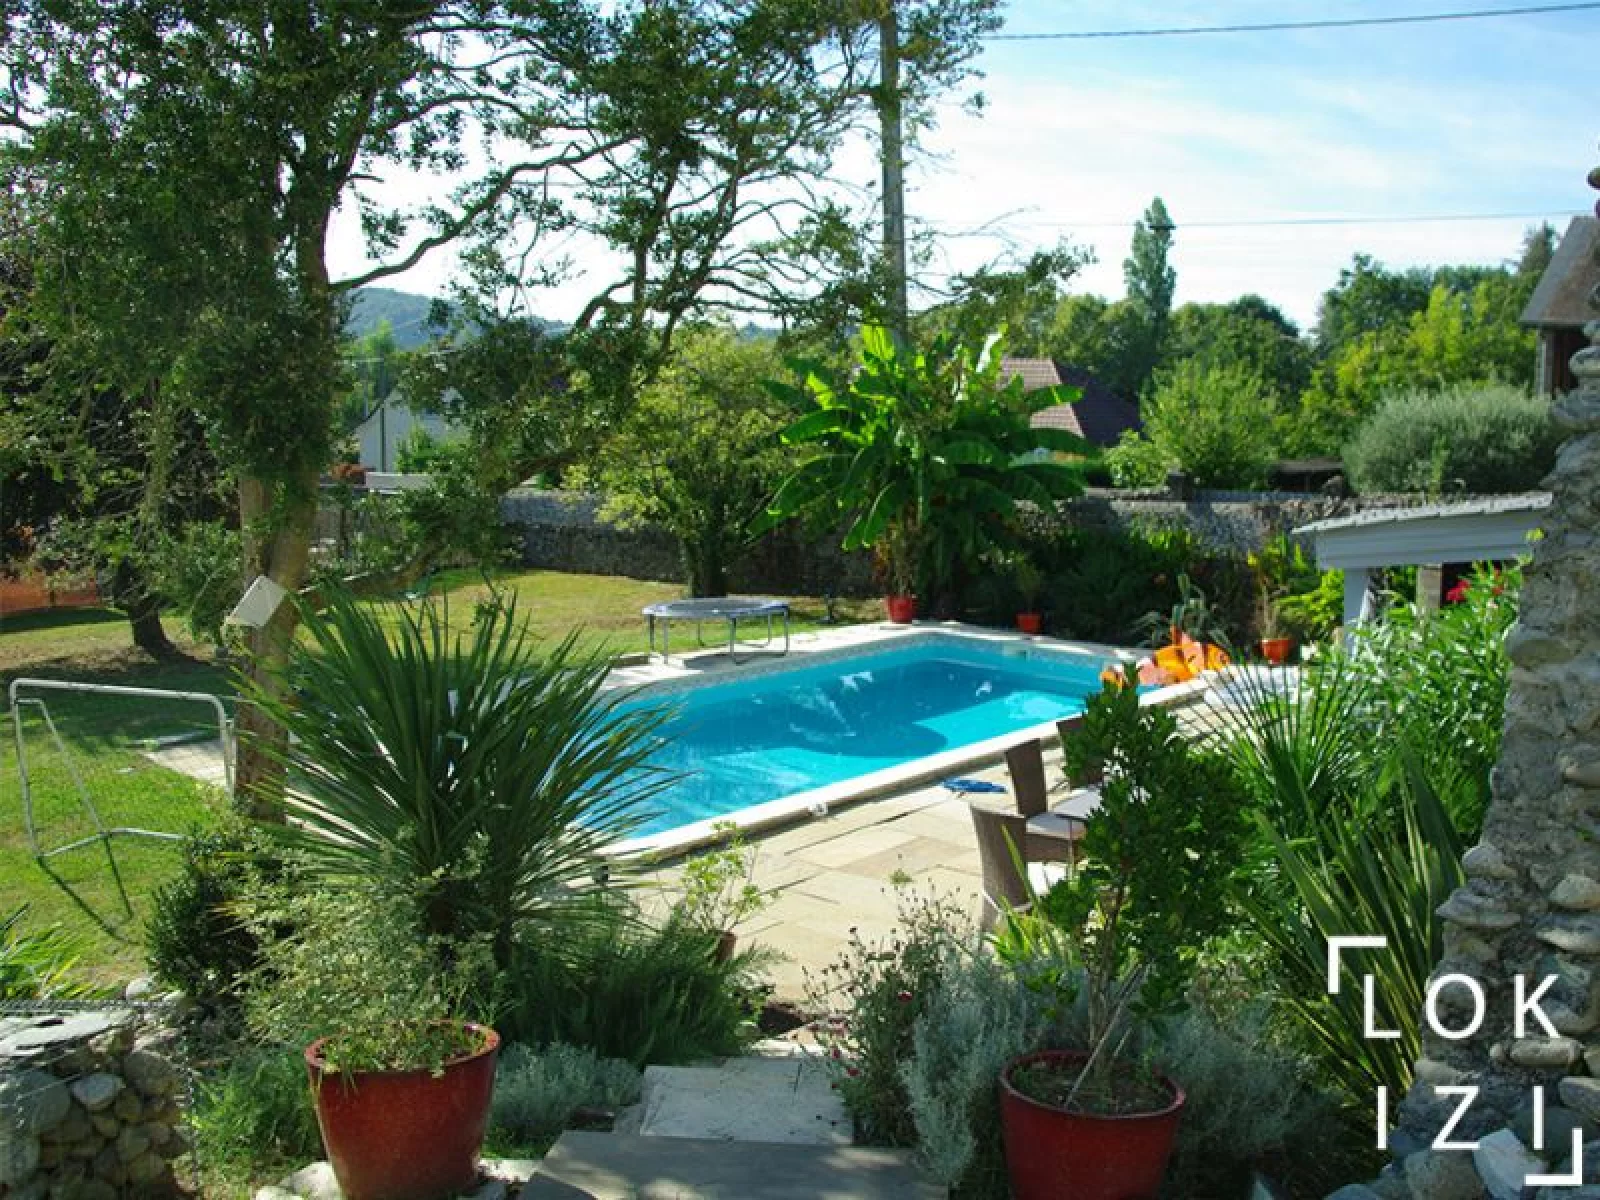 Location maison meuble 235m, 4 chambres, jardin et piscine (Bordes - Pau 64)